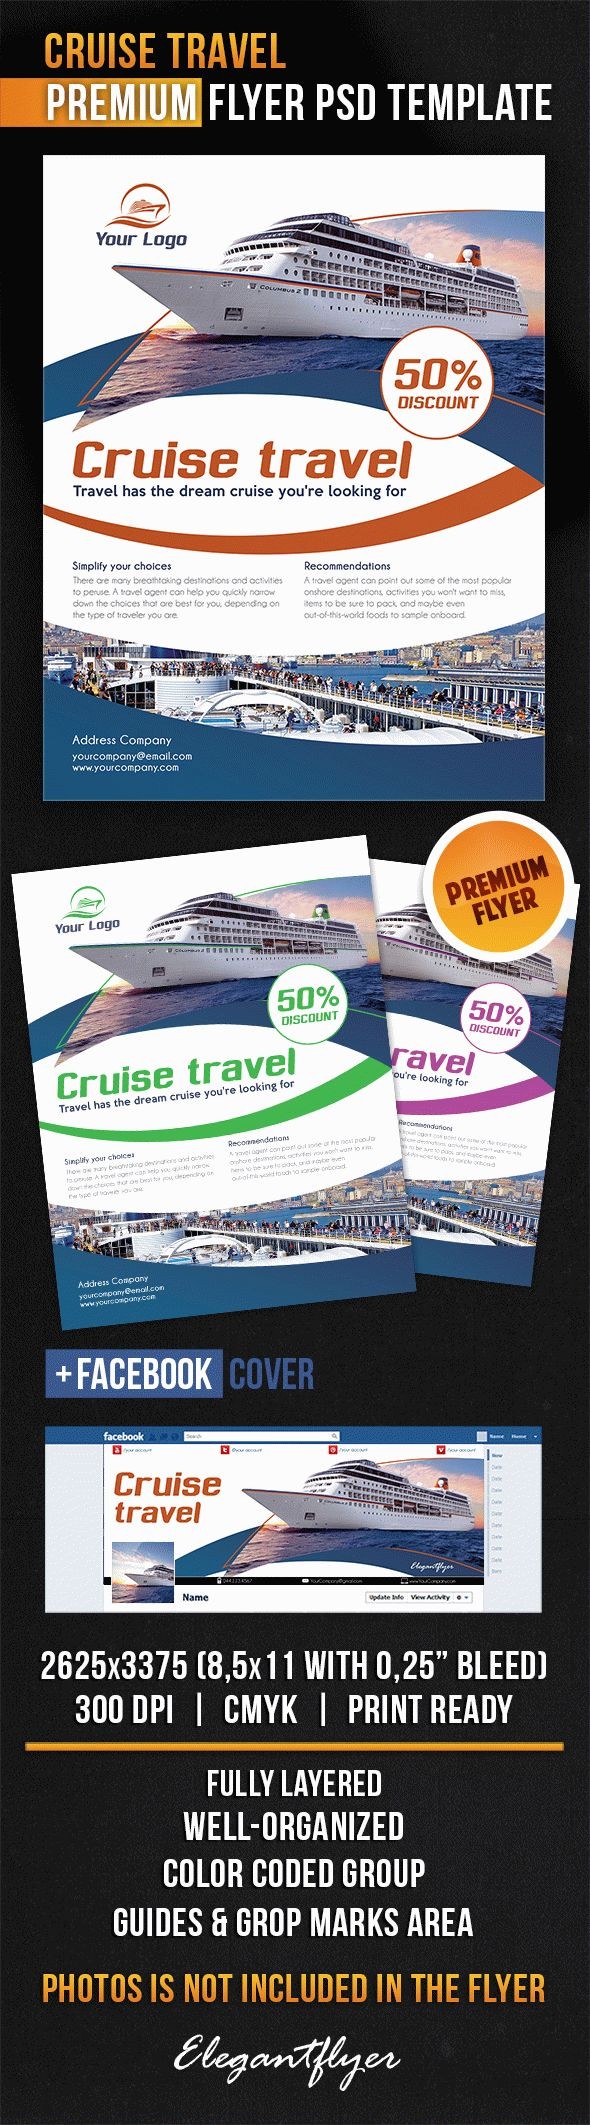 Cruise Travel Flyer by ElegantFlyer